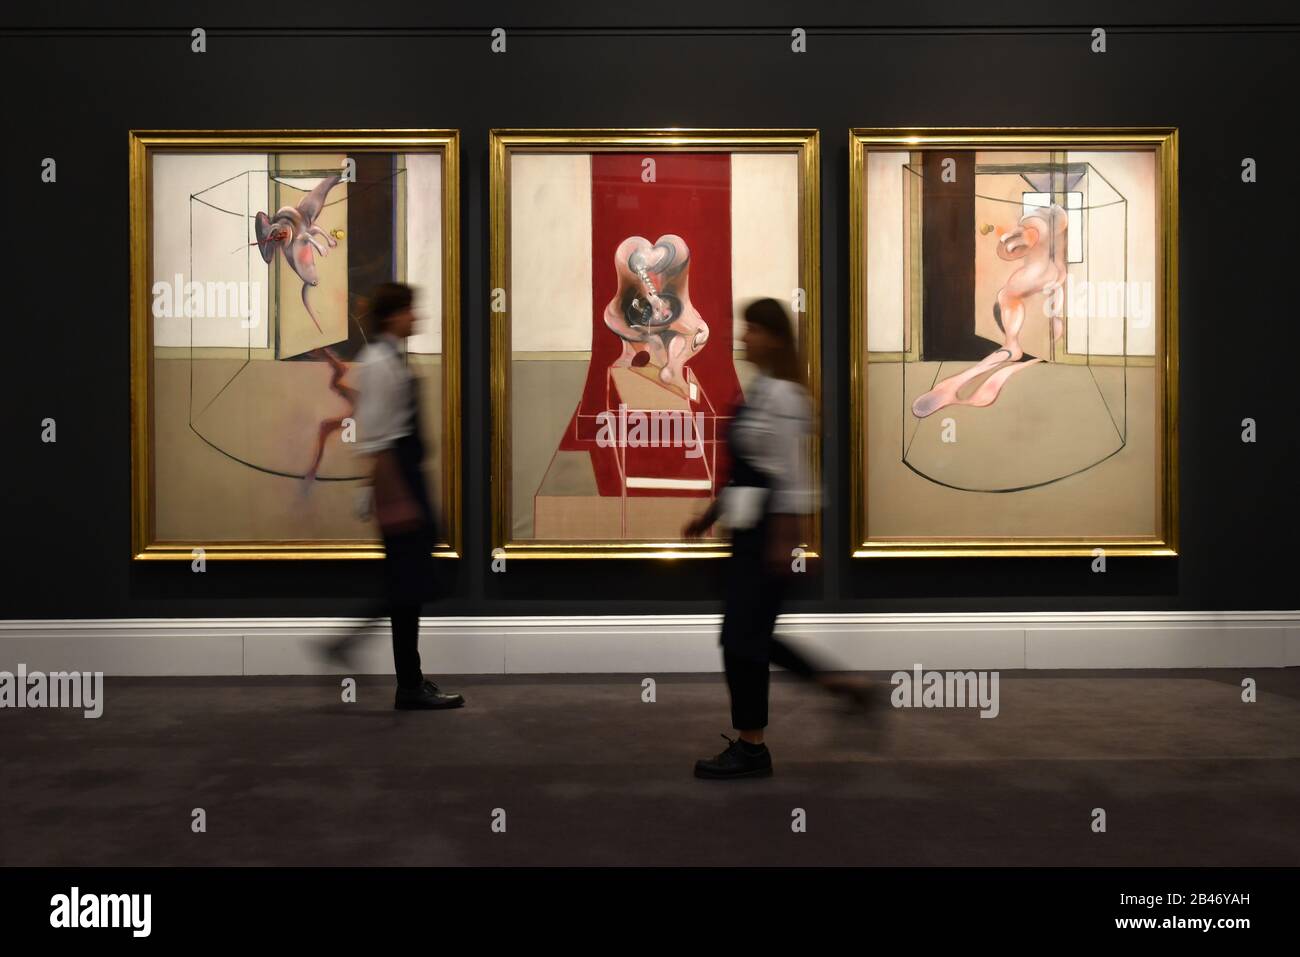 Trittico Ispirato all'Oresteia di Aeschylus, 1981 da Francis Bacon durante un'anteprima stampa a Sotheby's a Londra prima dell'asta dell'opera dove si prevede di recuperare oltre 60 milioni di dollari USA presso la Contemporary Art sale di Sotheby a New York a maggio. Foto Stock